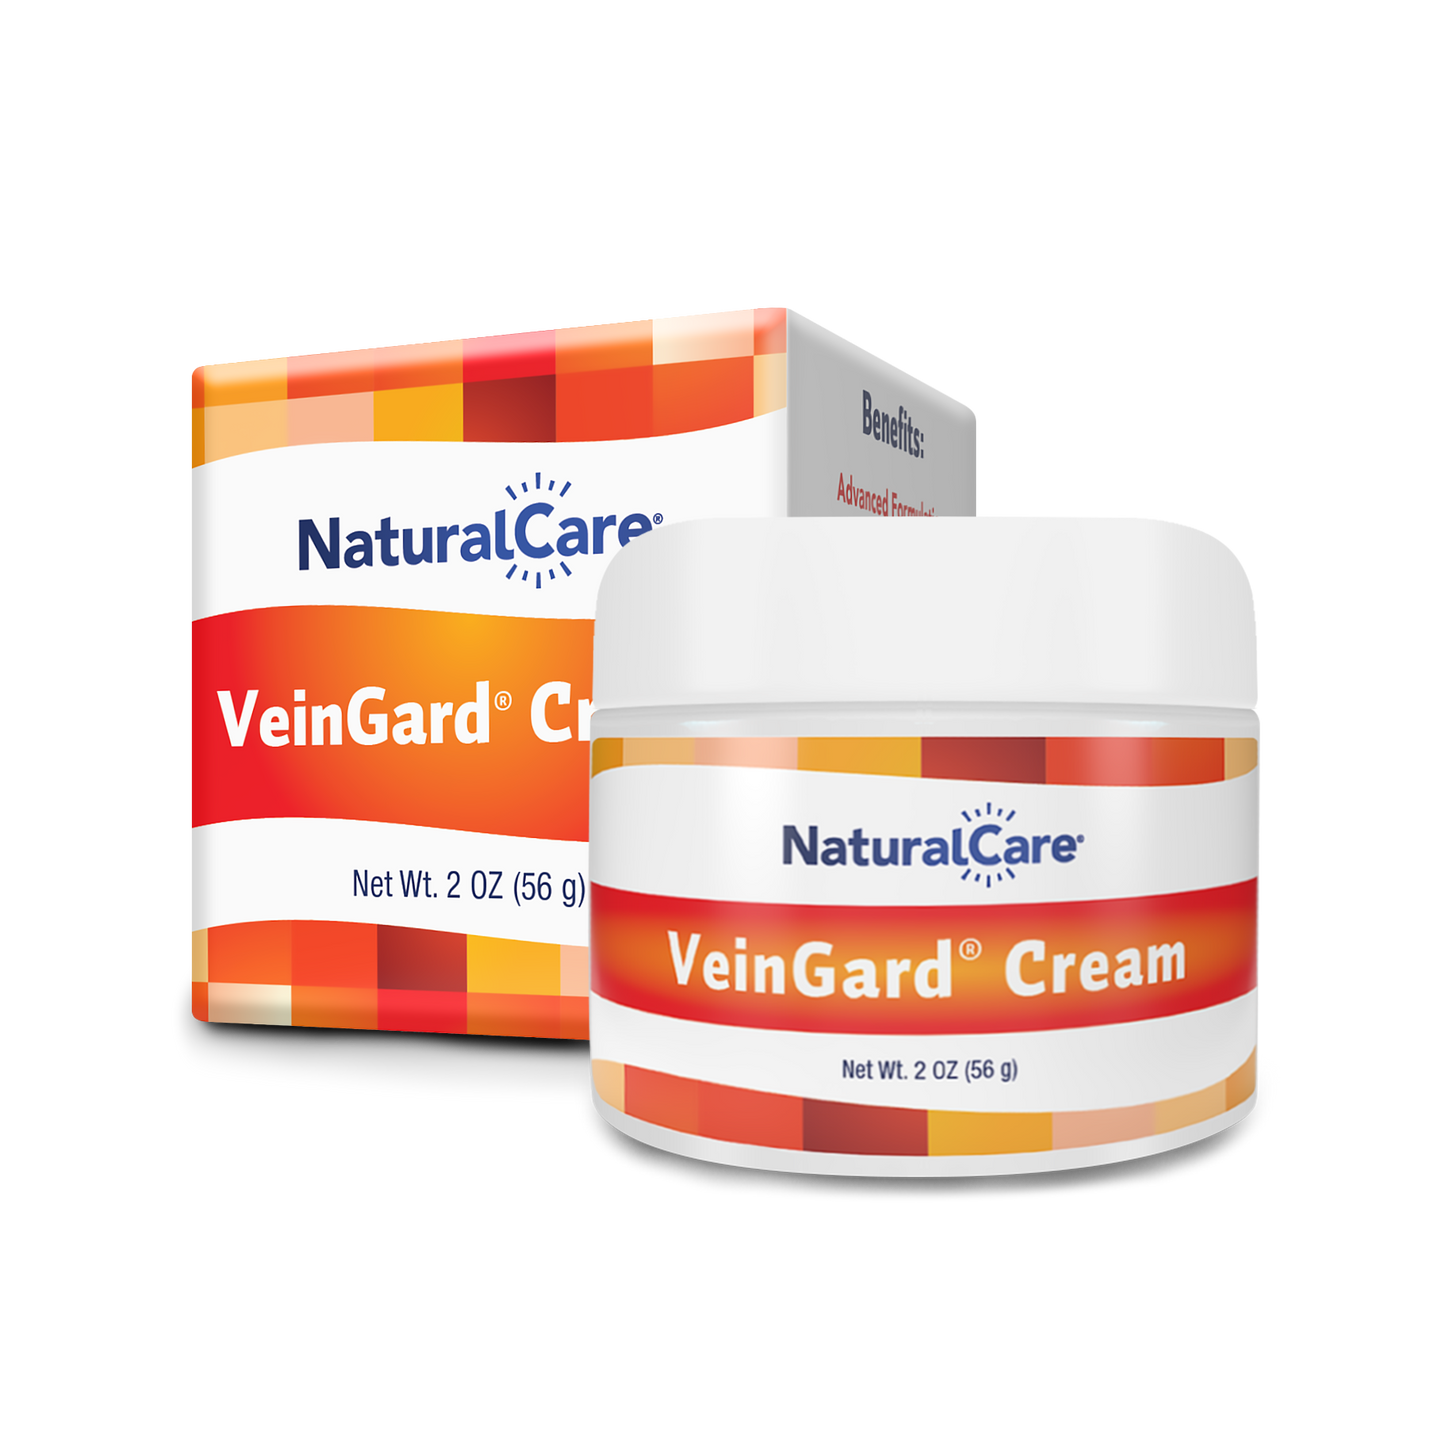 VeinGard Cream